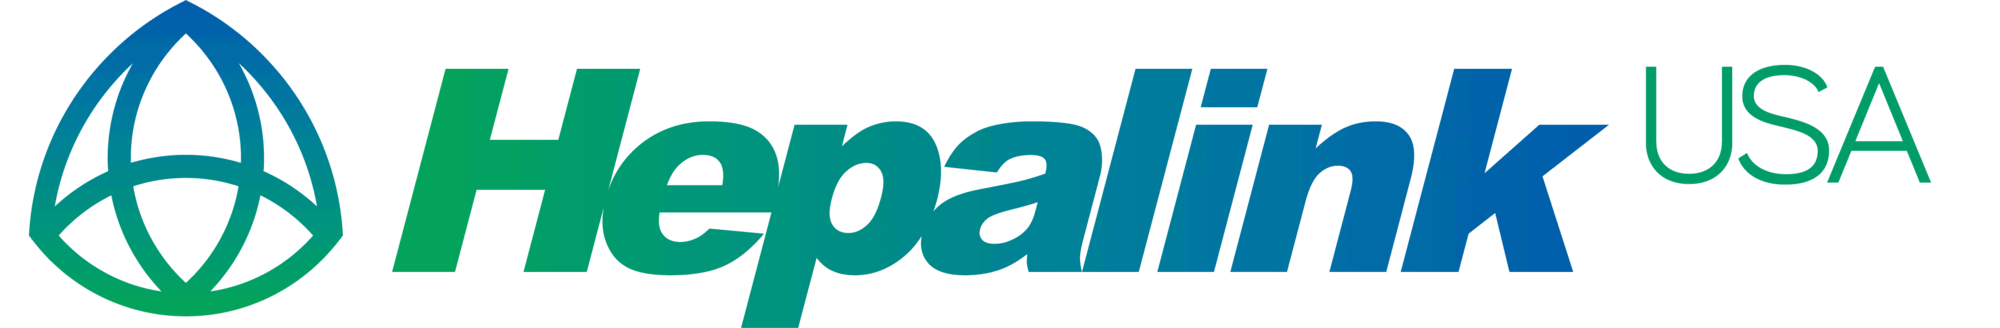 Hepalink Logo w USA